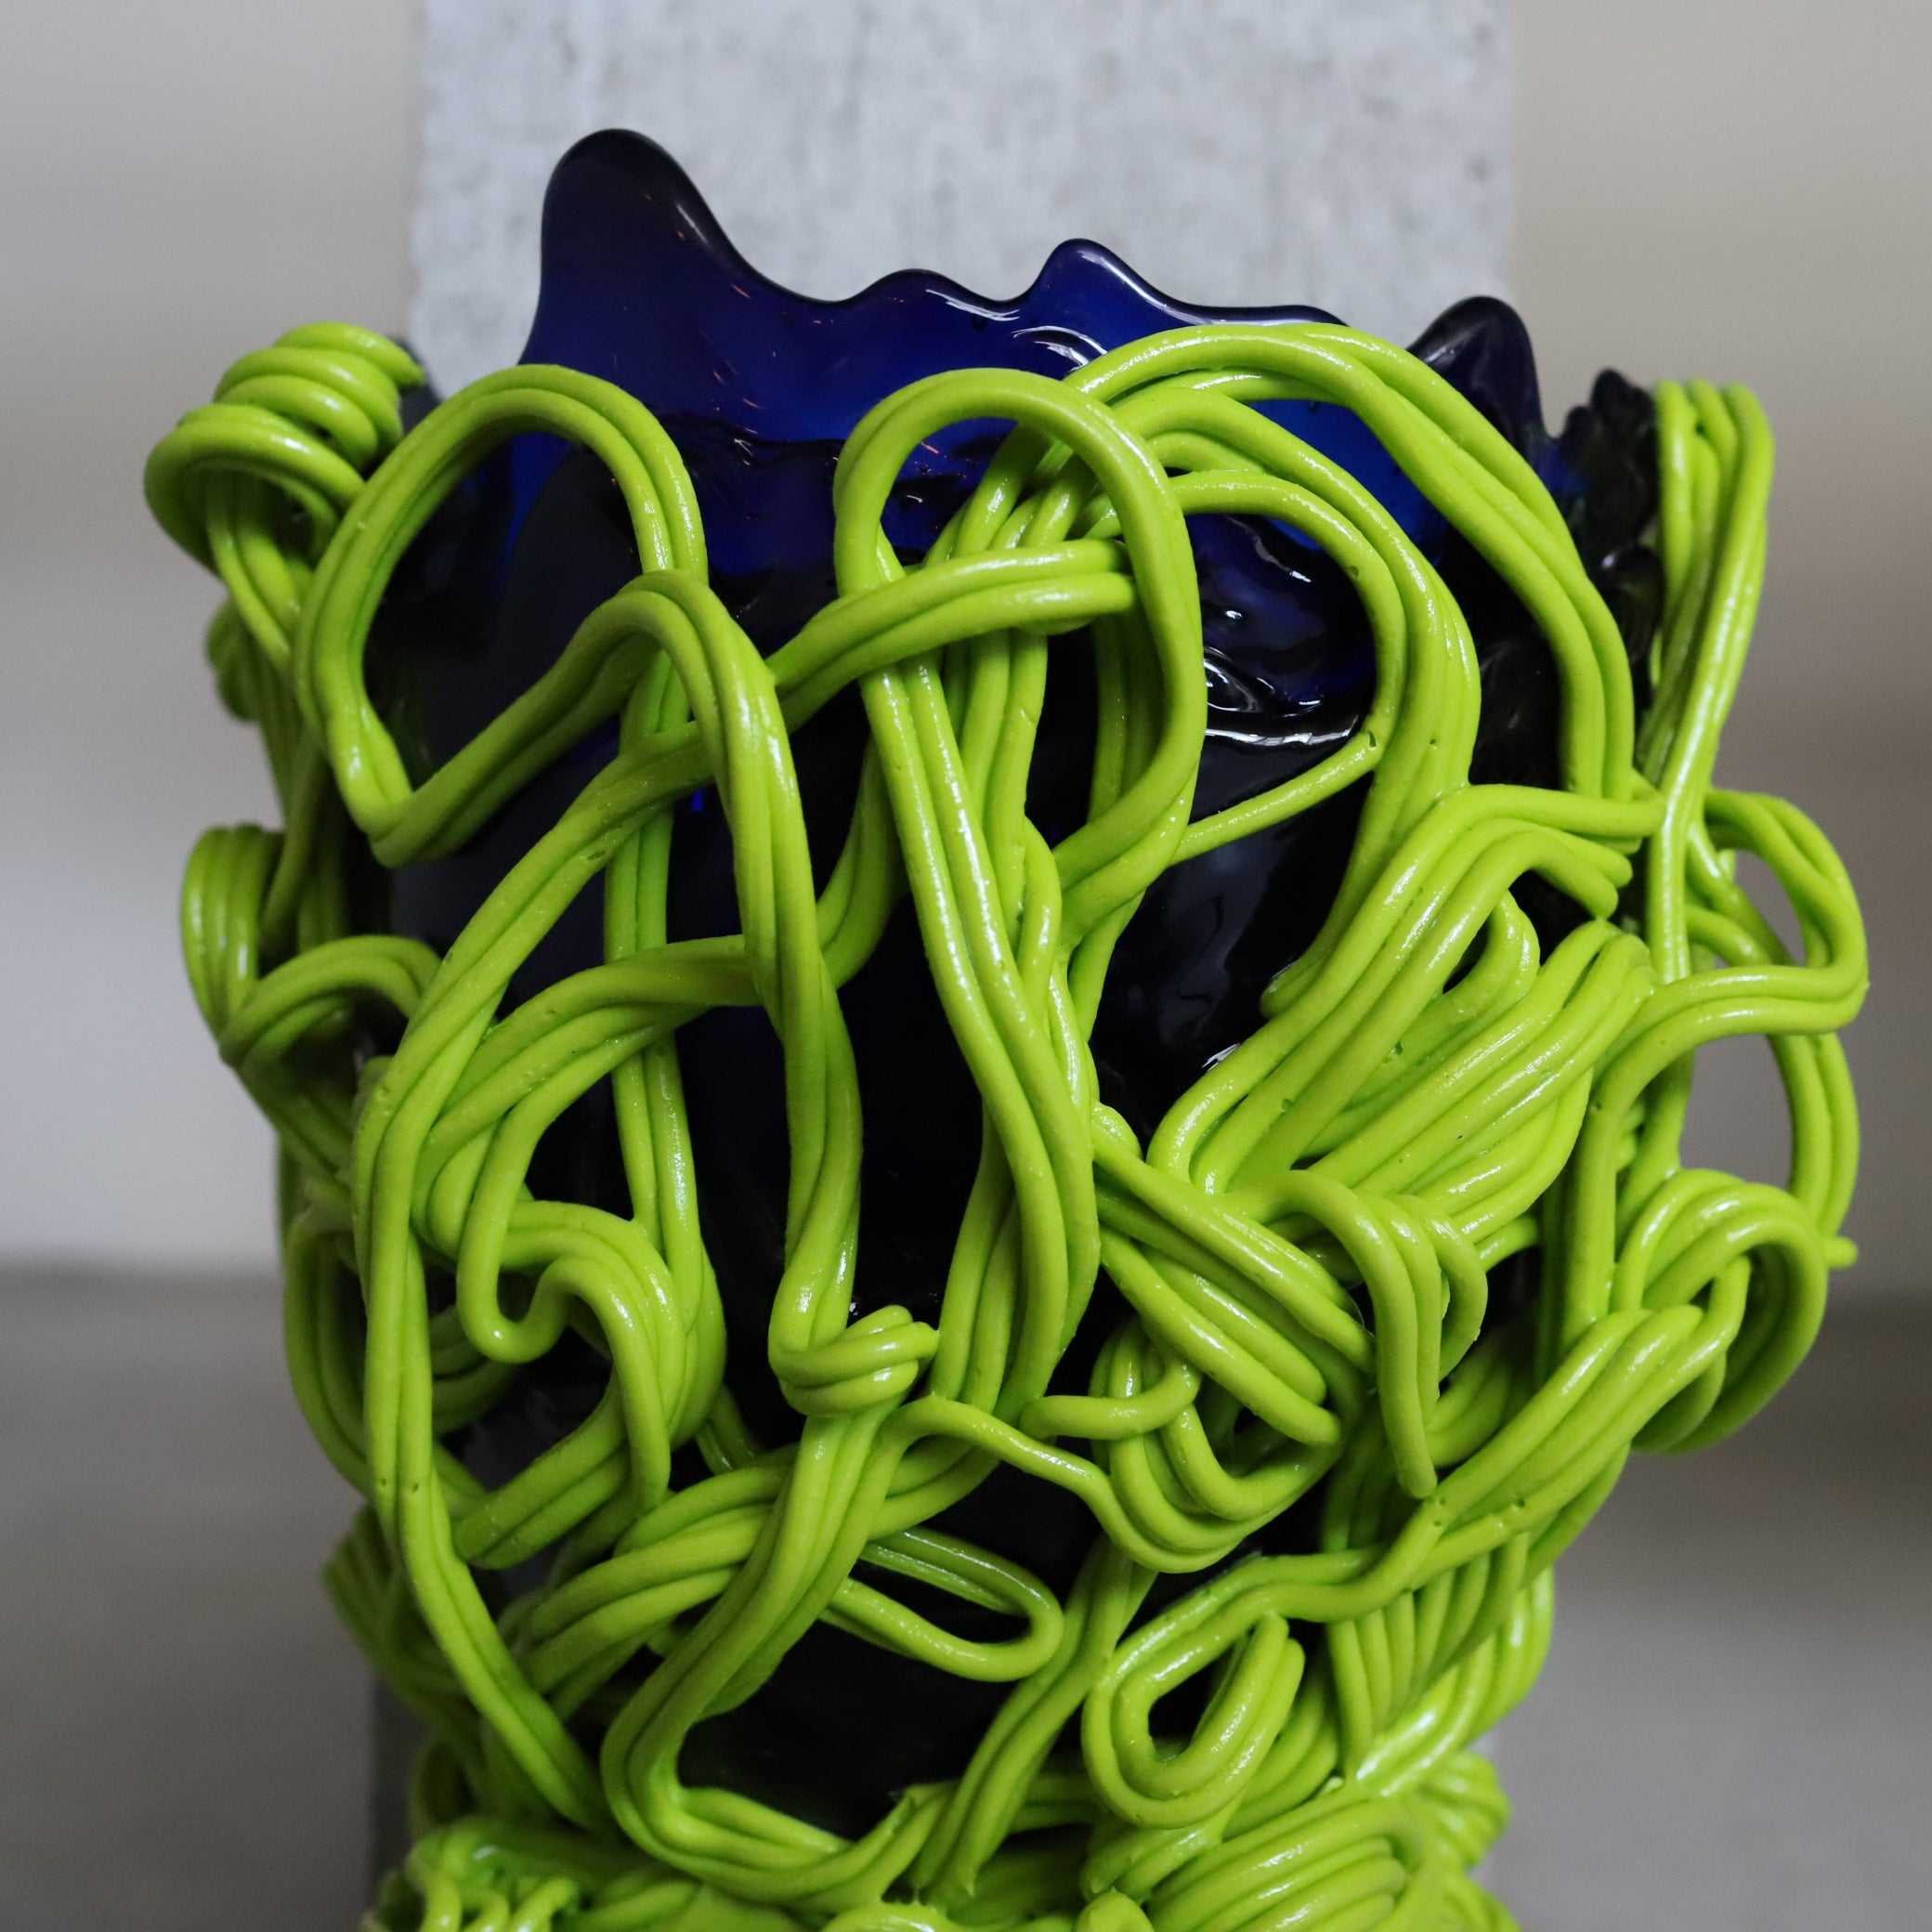 Spaghetti Special Vase - Fish Design by Gaetano Pesce